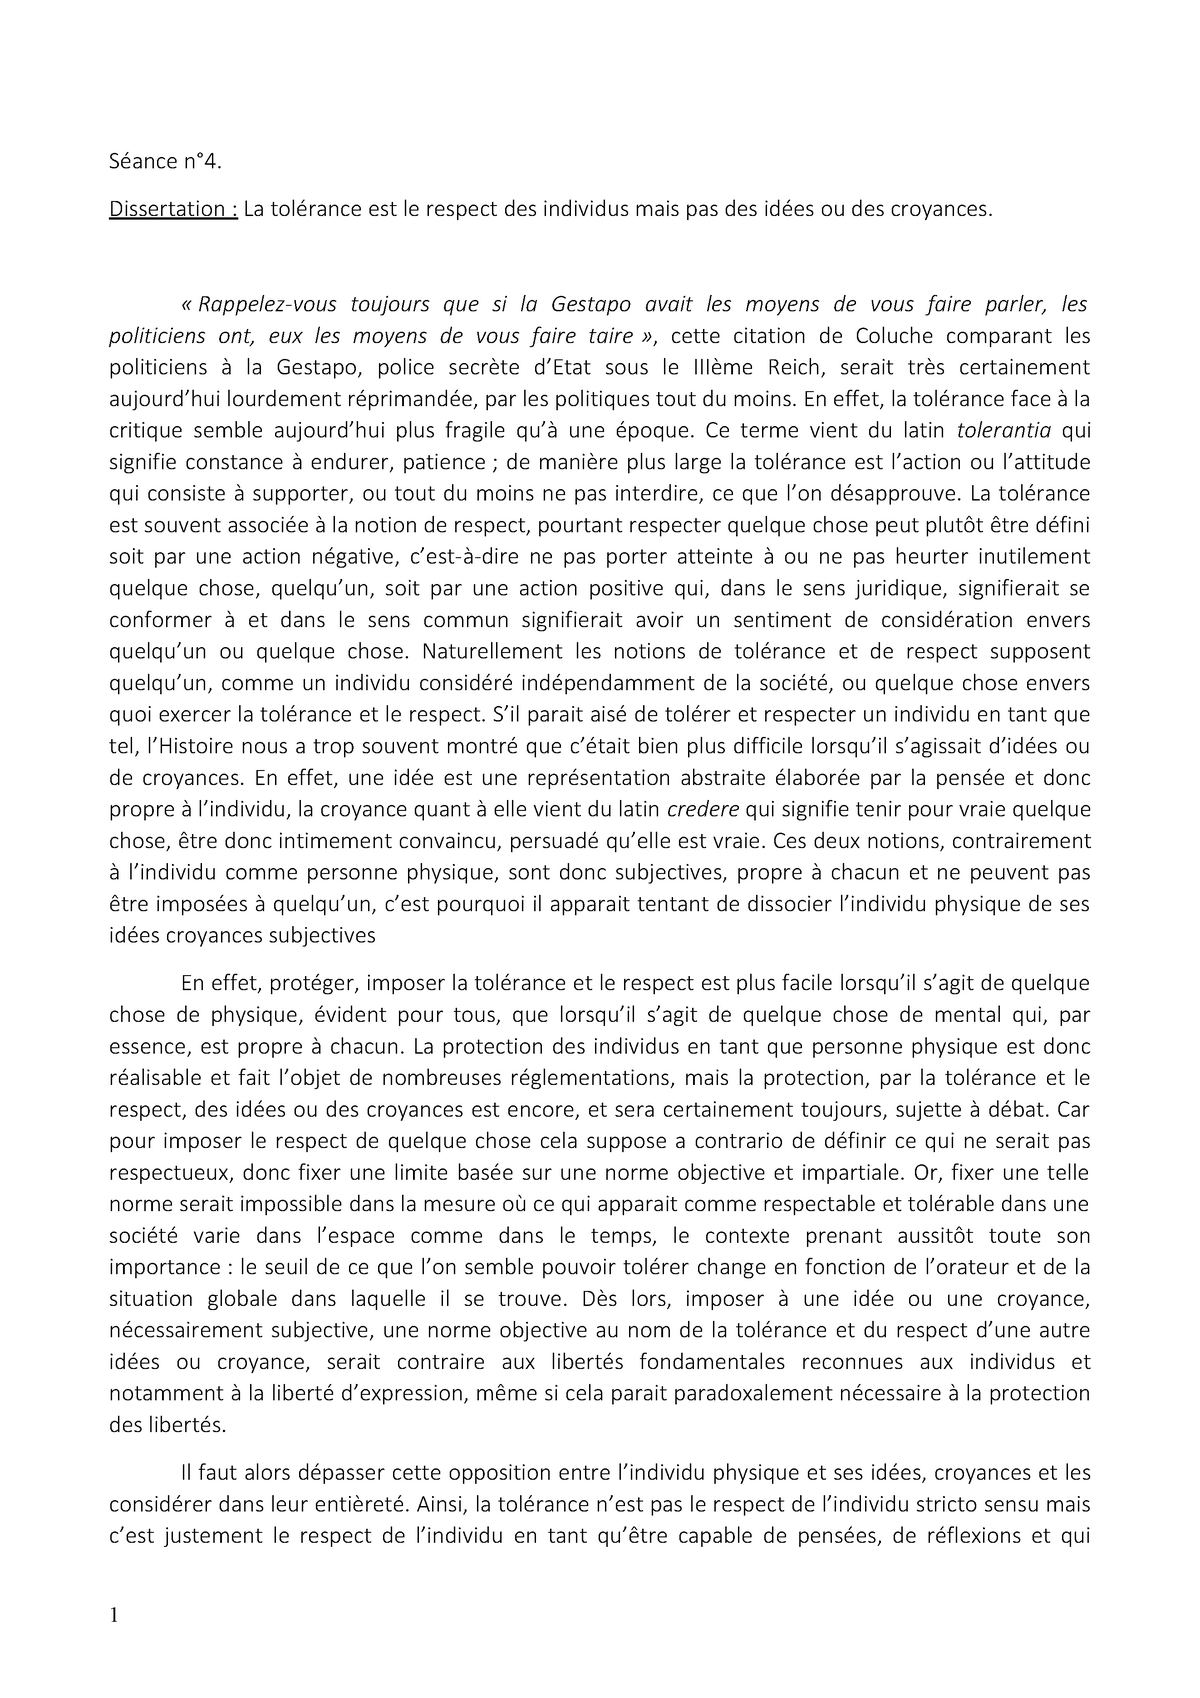 Dissertation - libertés fondamentales - Tolérance - Séance n°4 ...